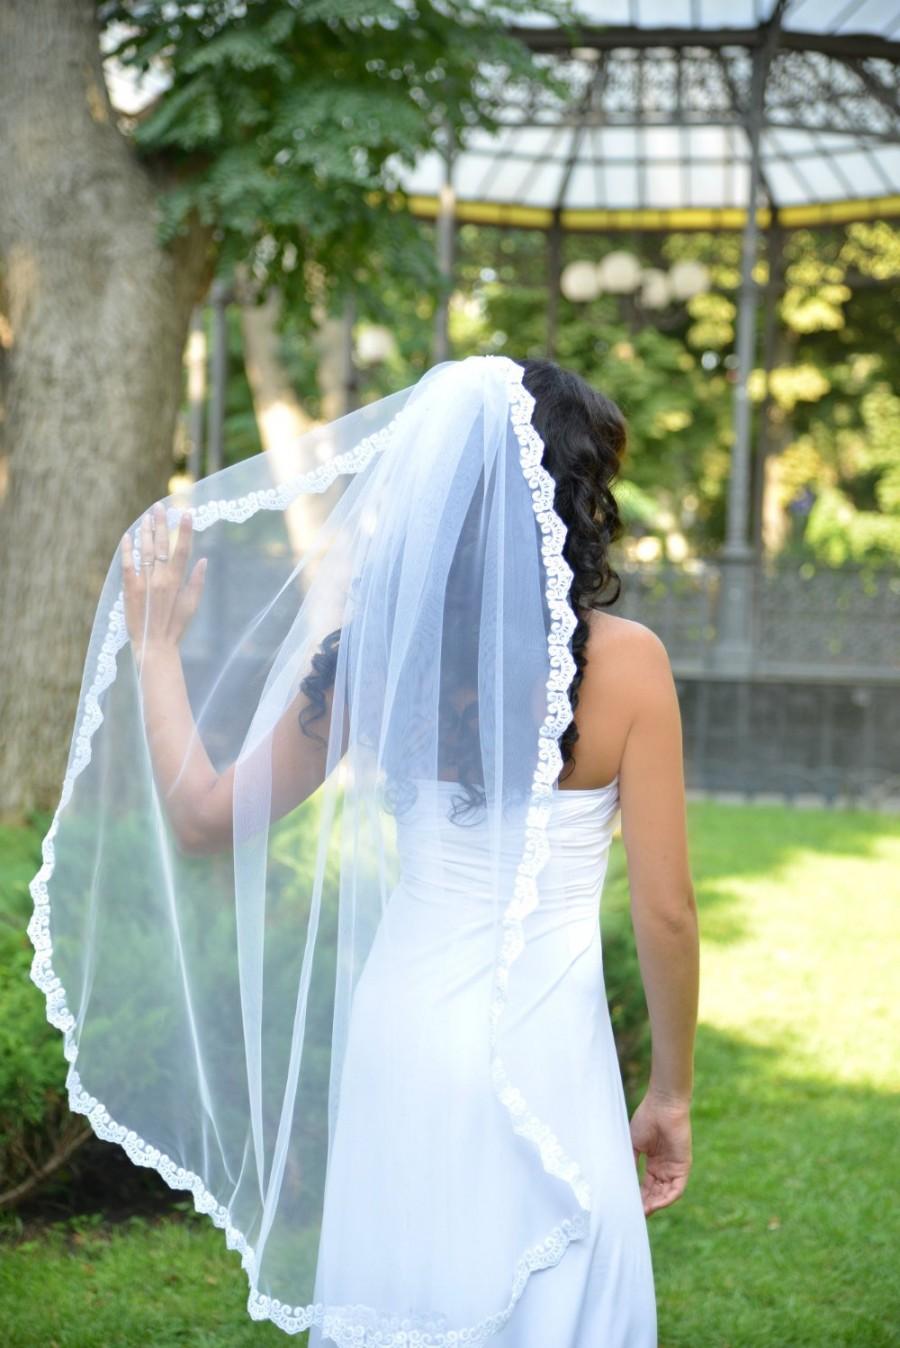 زفاف - Wedding veil, single tier veil, white lace soft veil STYLE 033 MONACO